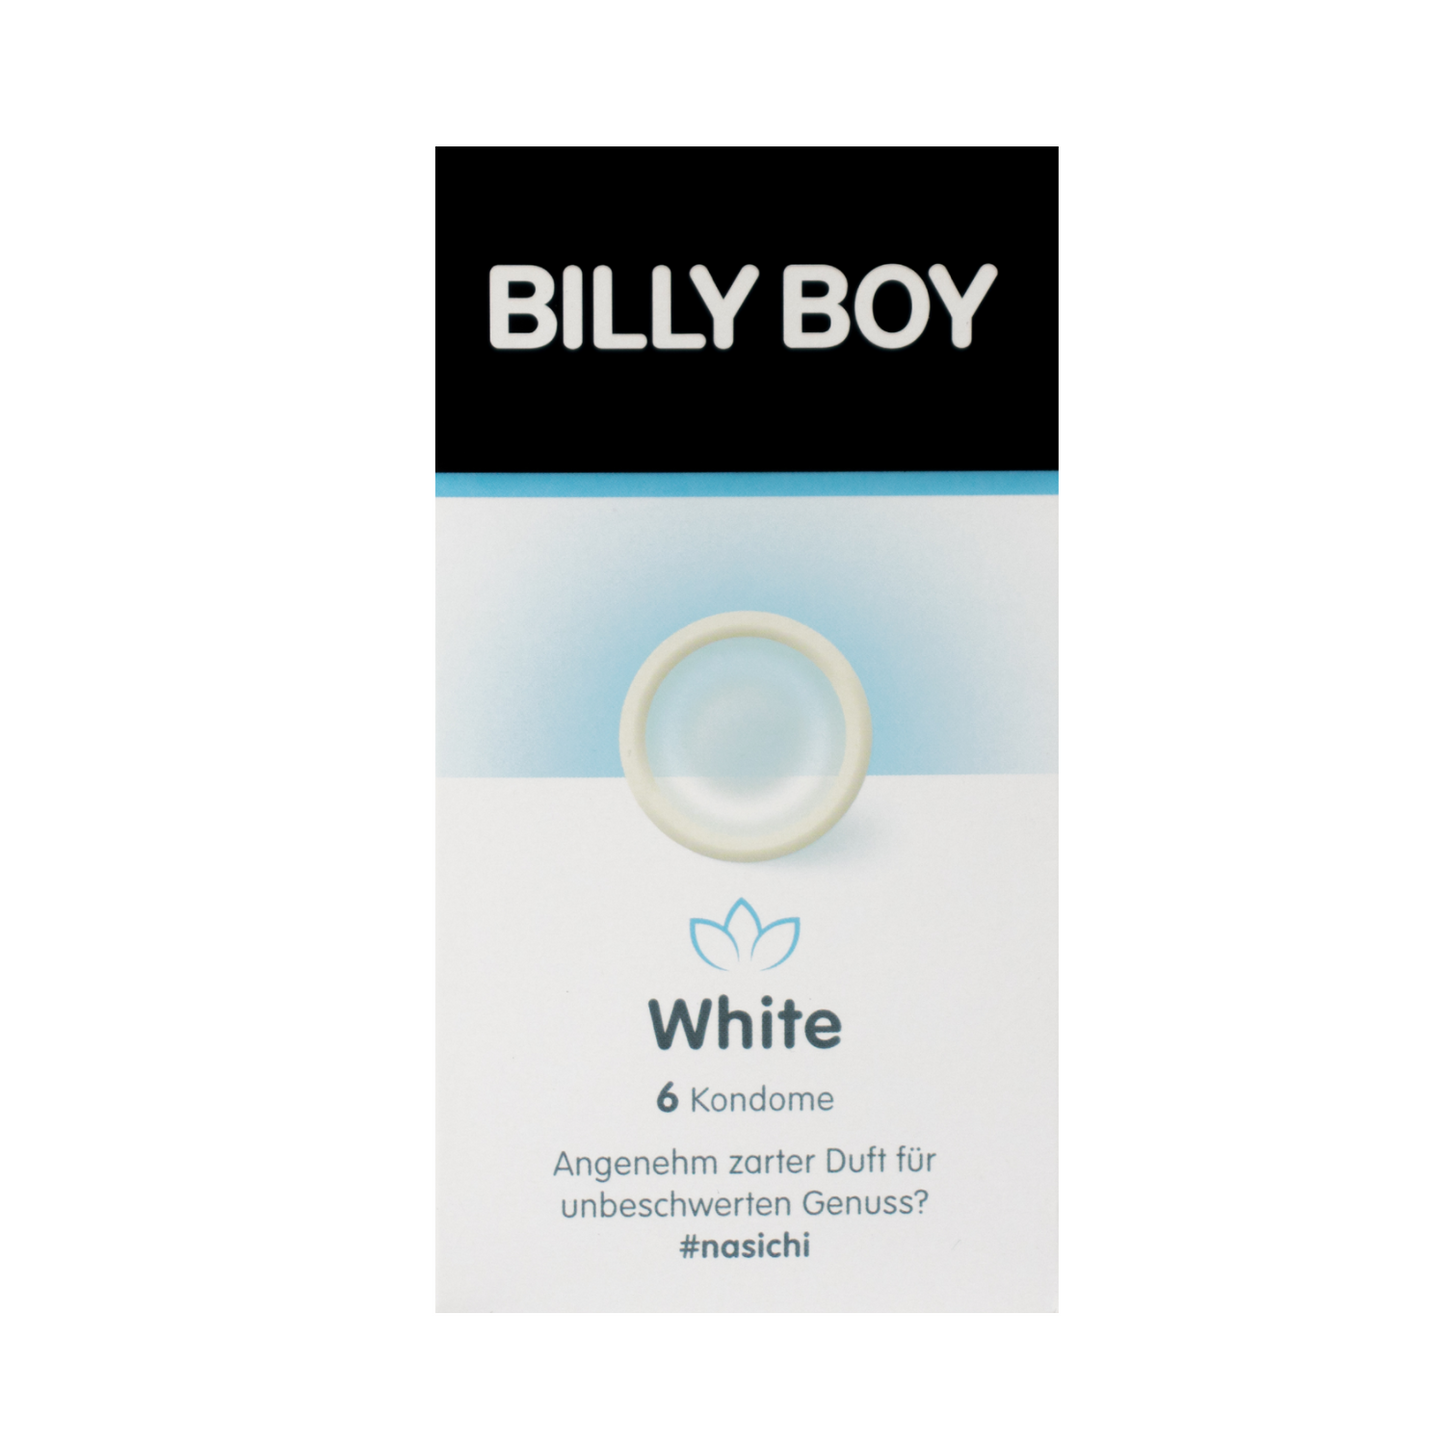 Doosje met 6 Billy Boy White condooms, te koop bij Flavourez.